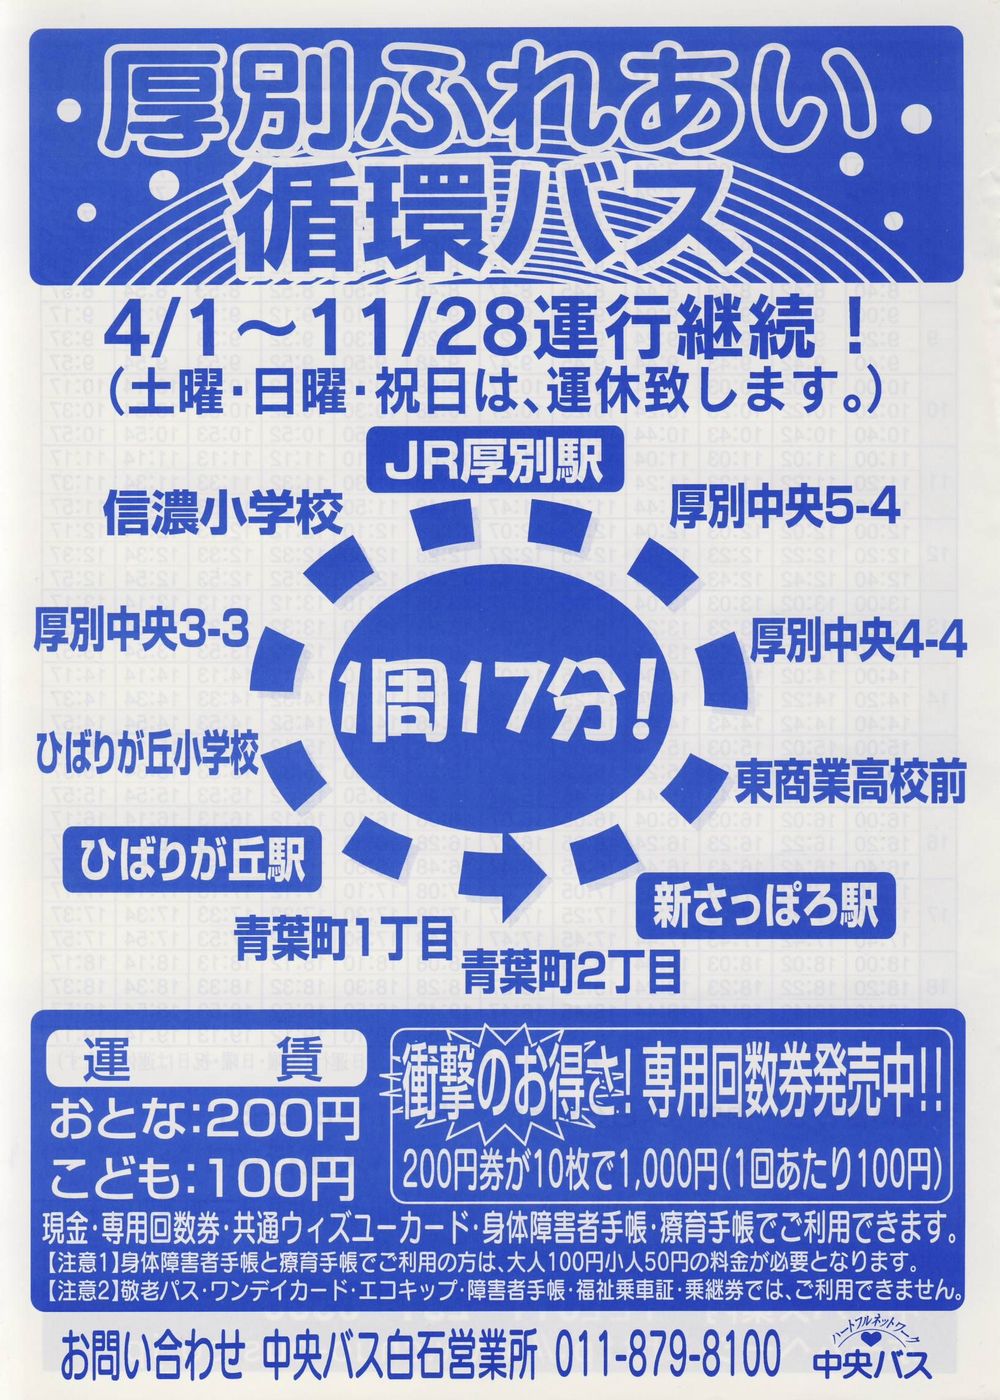 2003-04-01改正_北海道中央バス(札幌)_厚別ふれあい循環バスチラシ表面